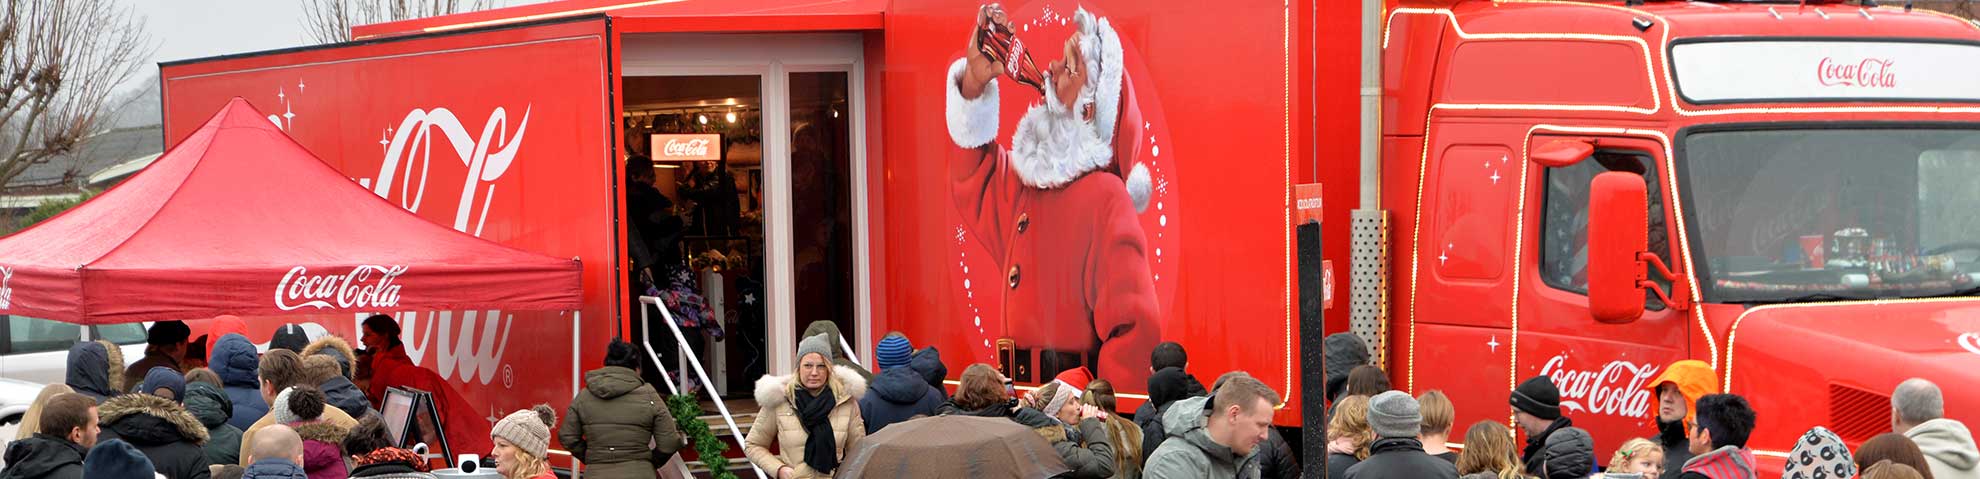 Coca Colas Juletruck kommer forbi Dianalund Centret med egen julestue og julemand